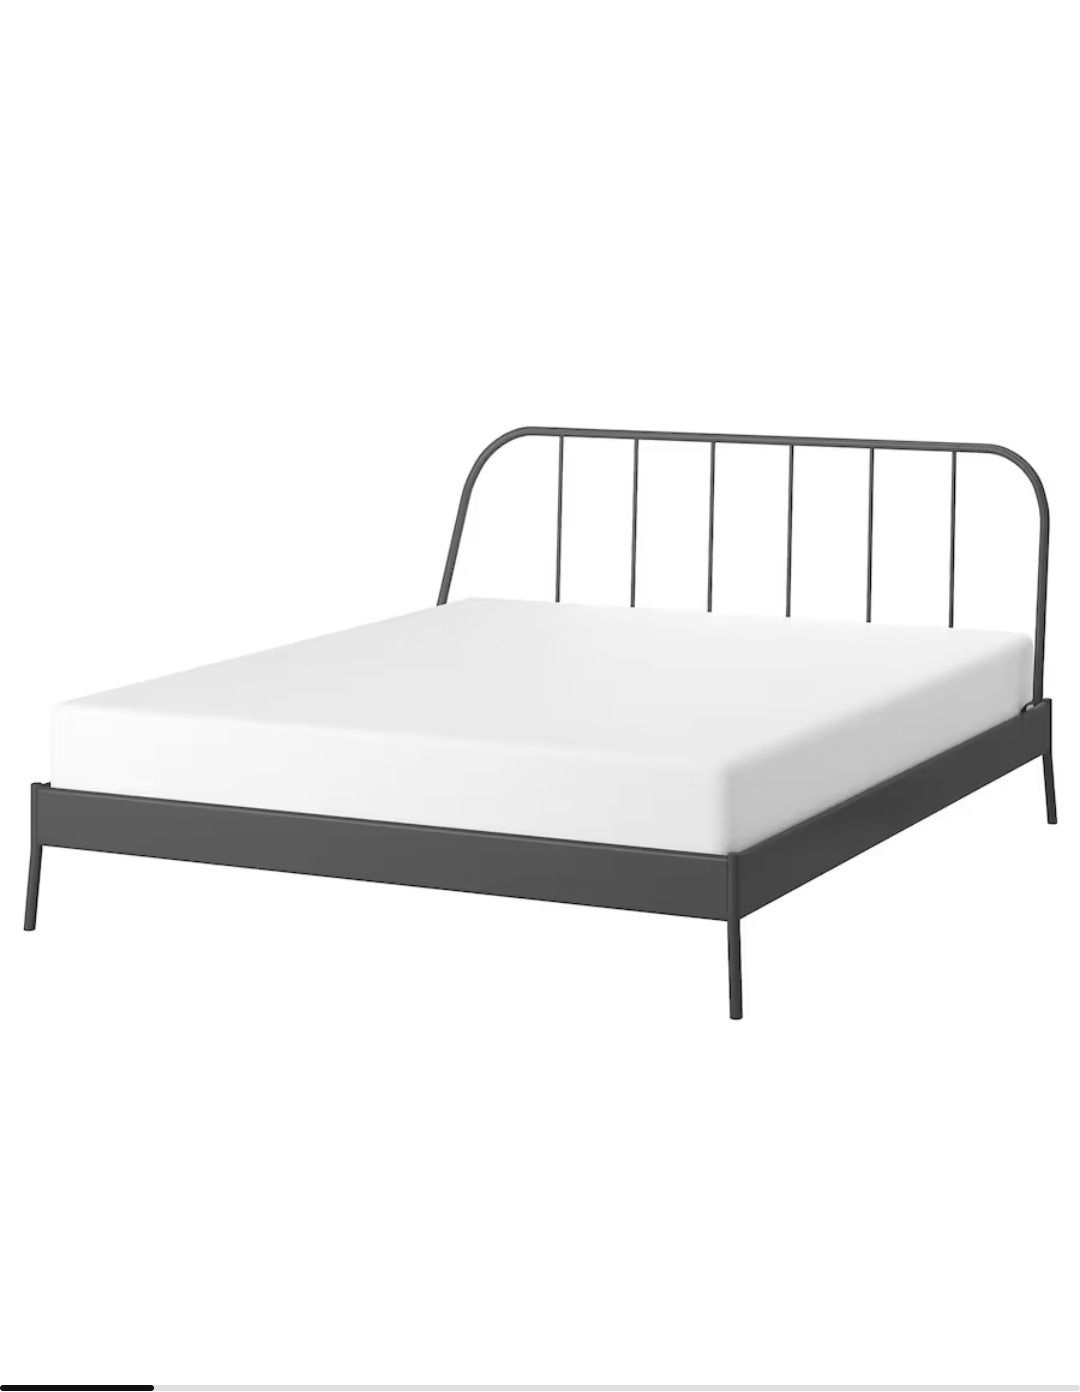 Ładne łóżko szare metalowe ikea 160x200 2x stelaże  stan bdb